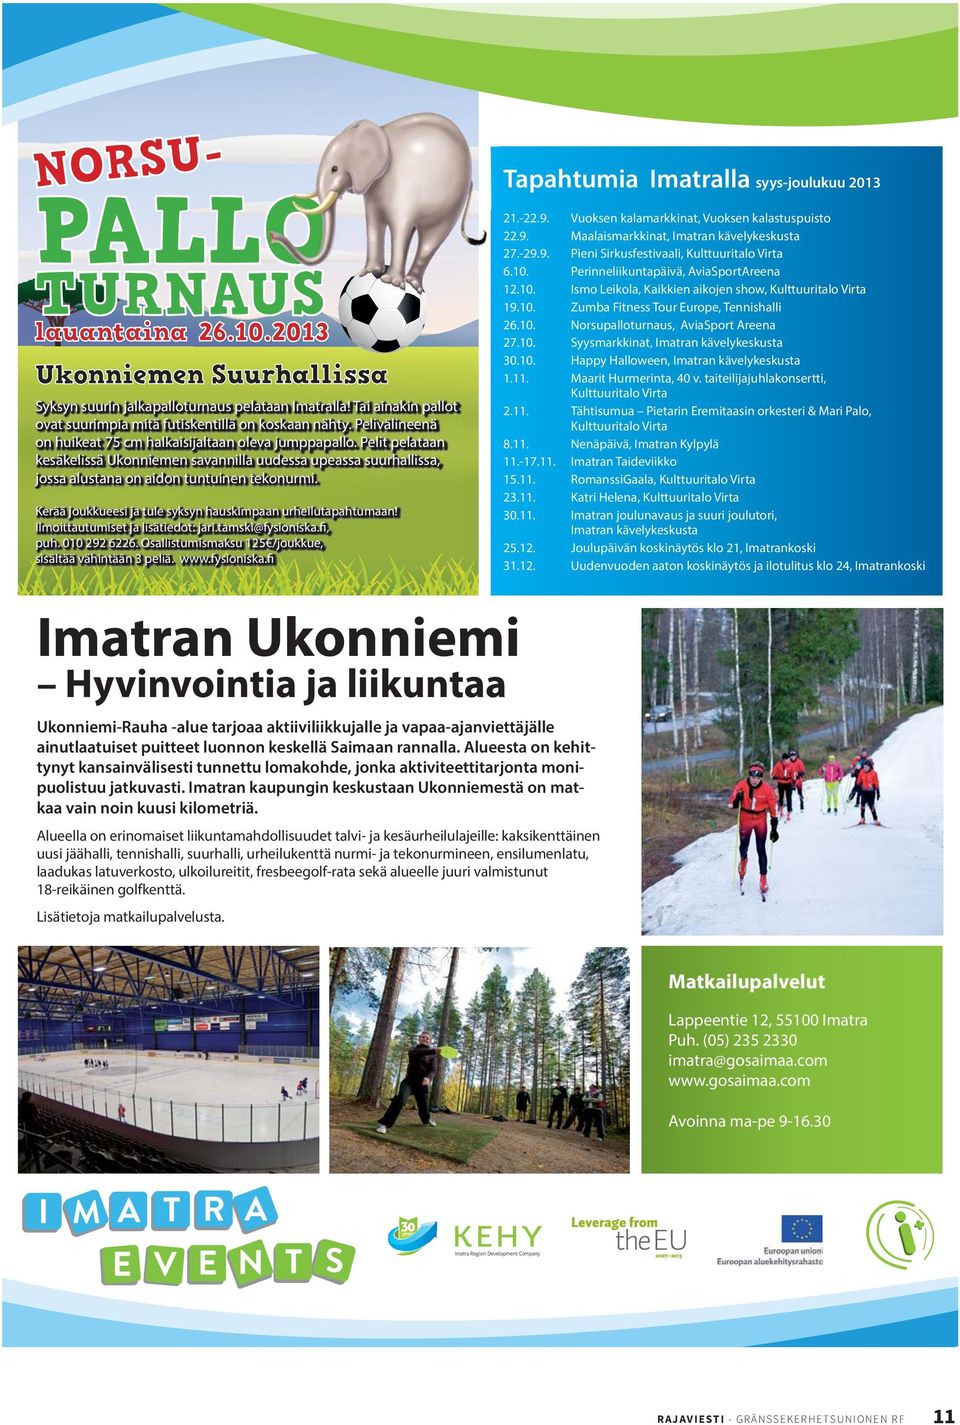 Kerää joukkueesi ja tule syksyn hauskimpaan urheilutapahtumaan! Ilmoittautumiset ja lisätiedot: jari.tamski@fysioniska.fi, puh. 010 292 6226.